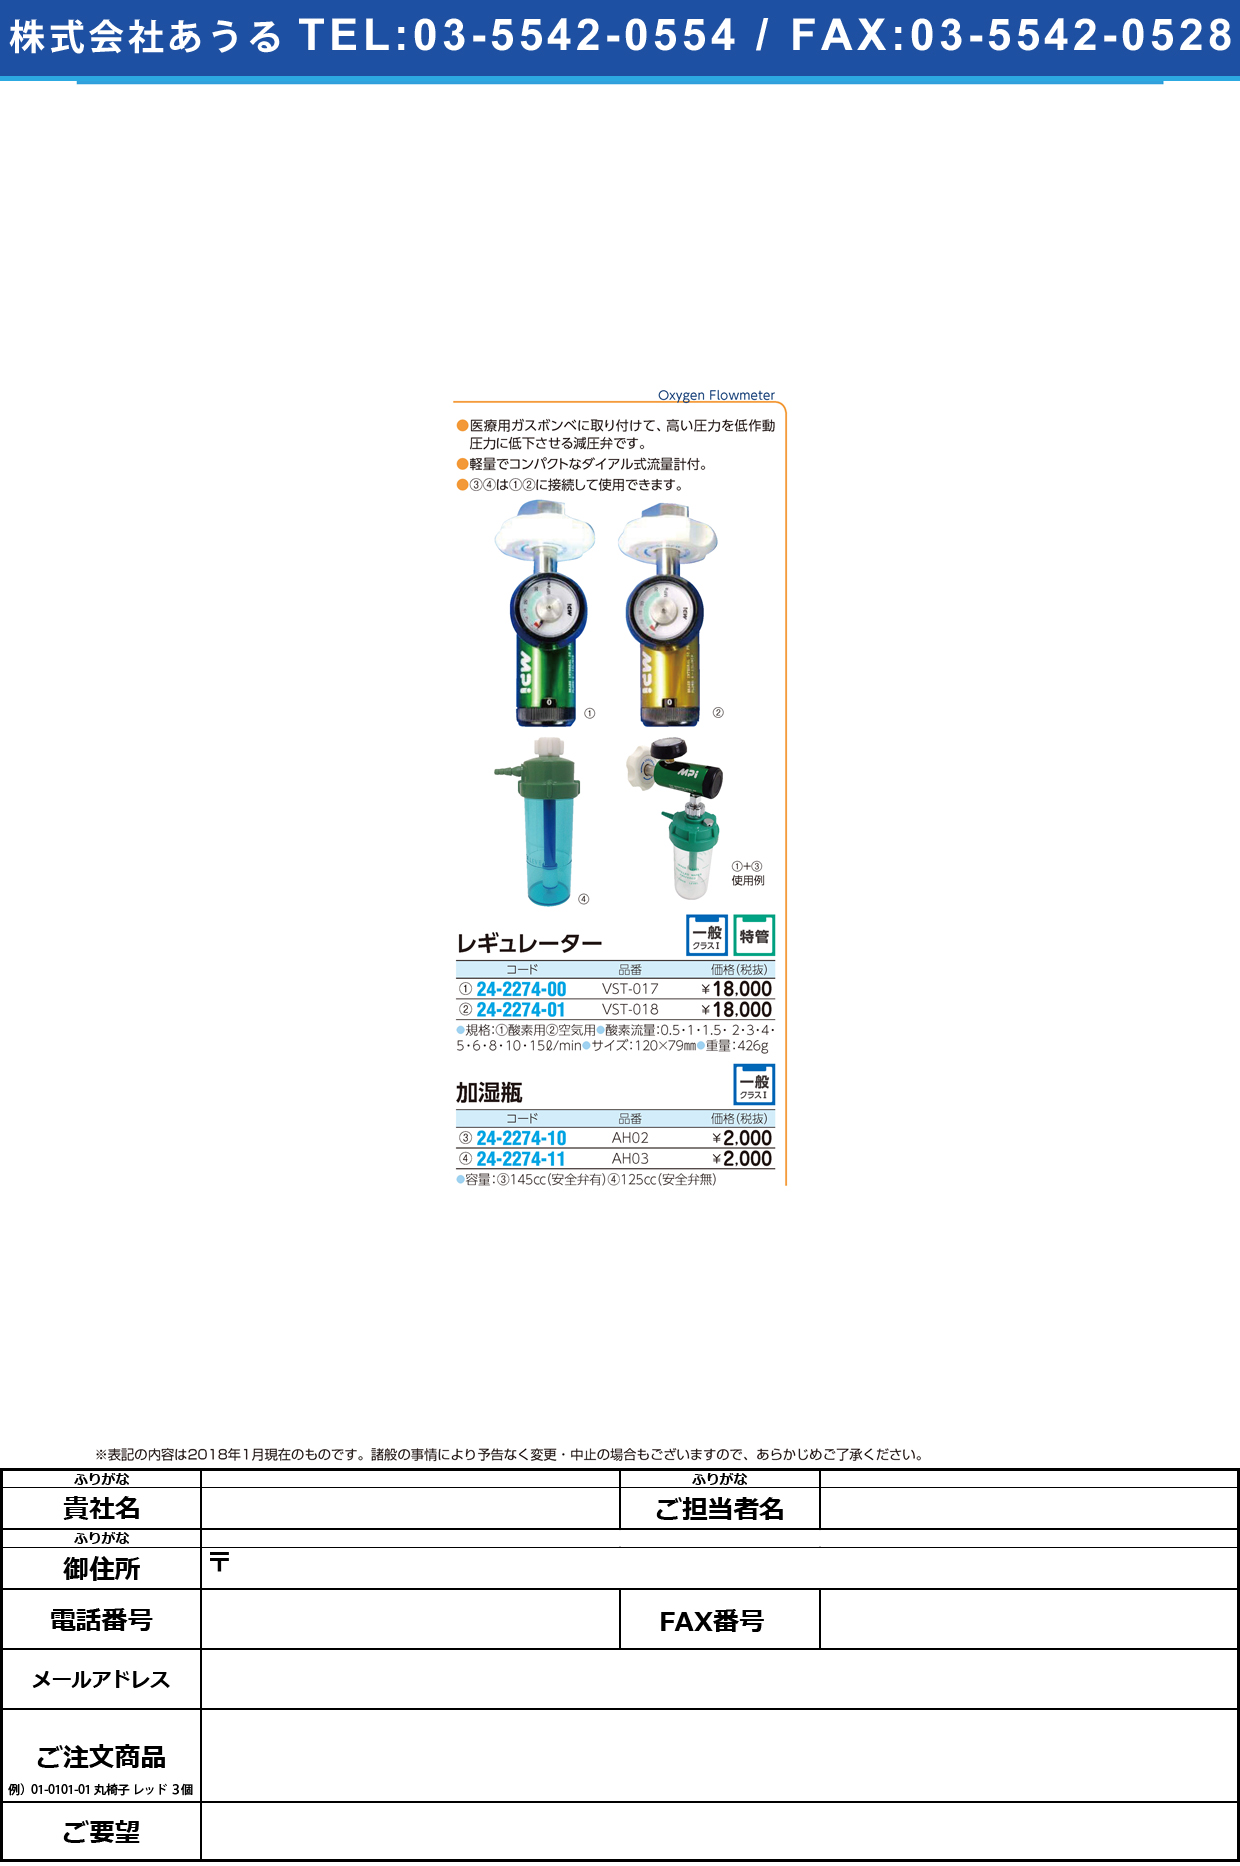 (24-2274-01)レギュレーター（空気用） VST-018(ｲｴﾛｰ) ﾚｷﾞｭﾚｰﾀｰ(ｸｳｷﾖｳ)【1台単位】【2018年カタログ商品】